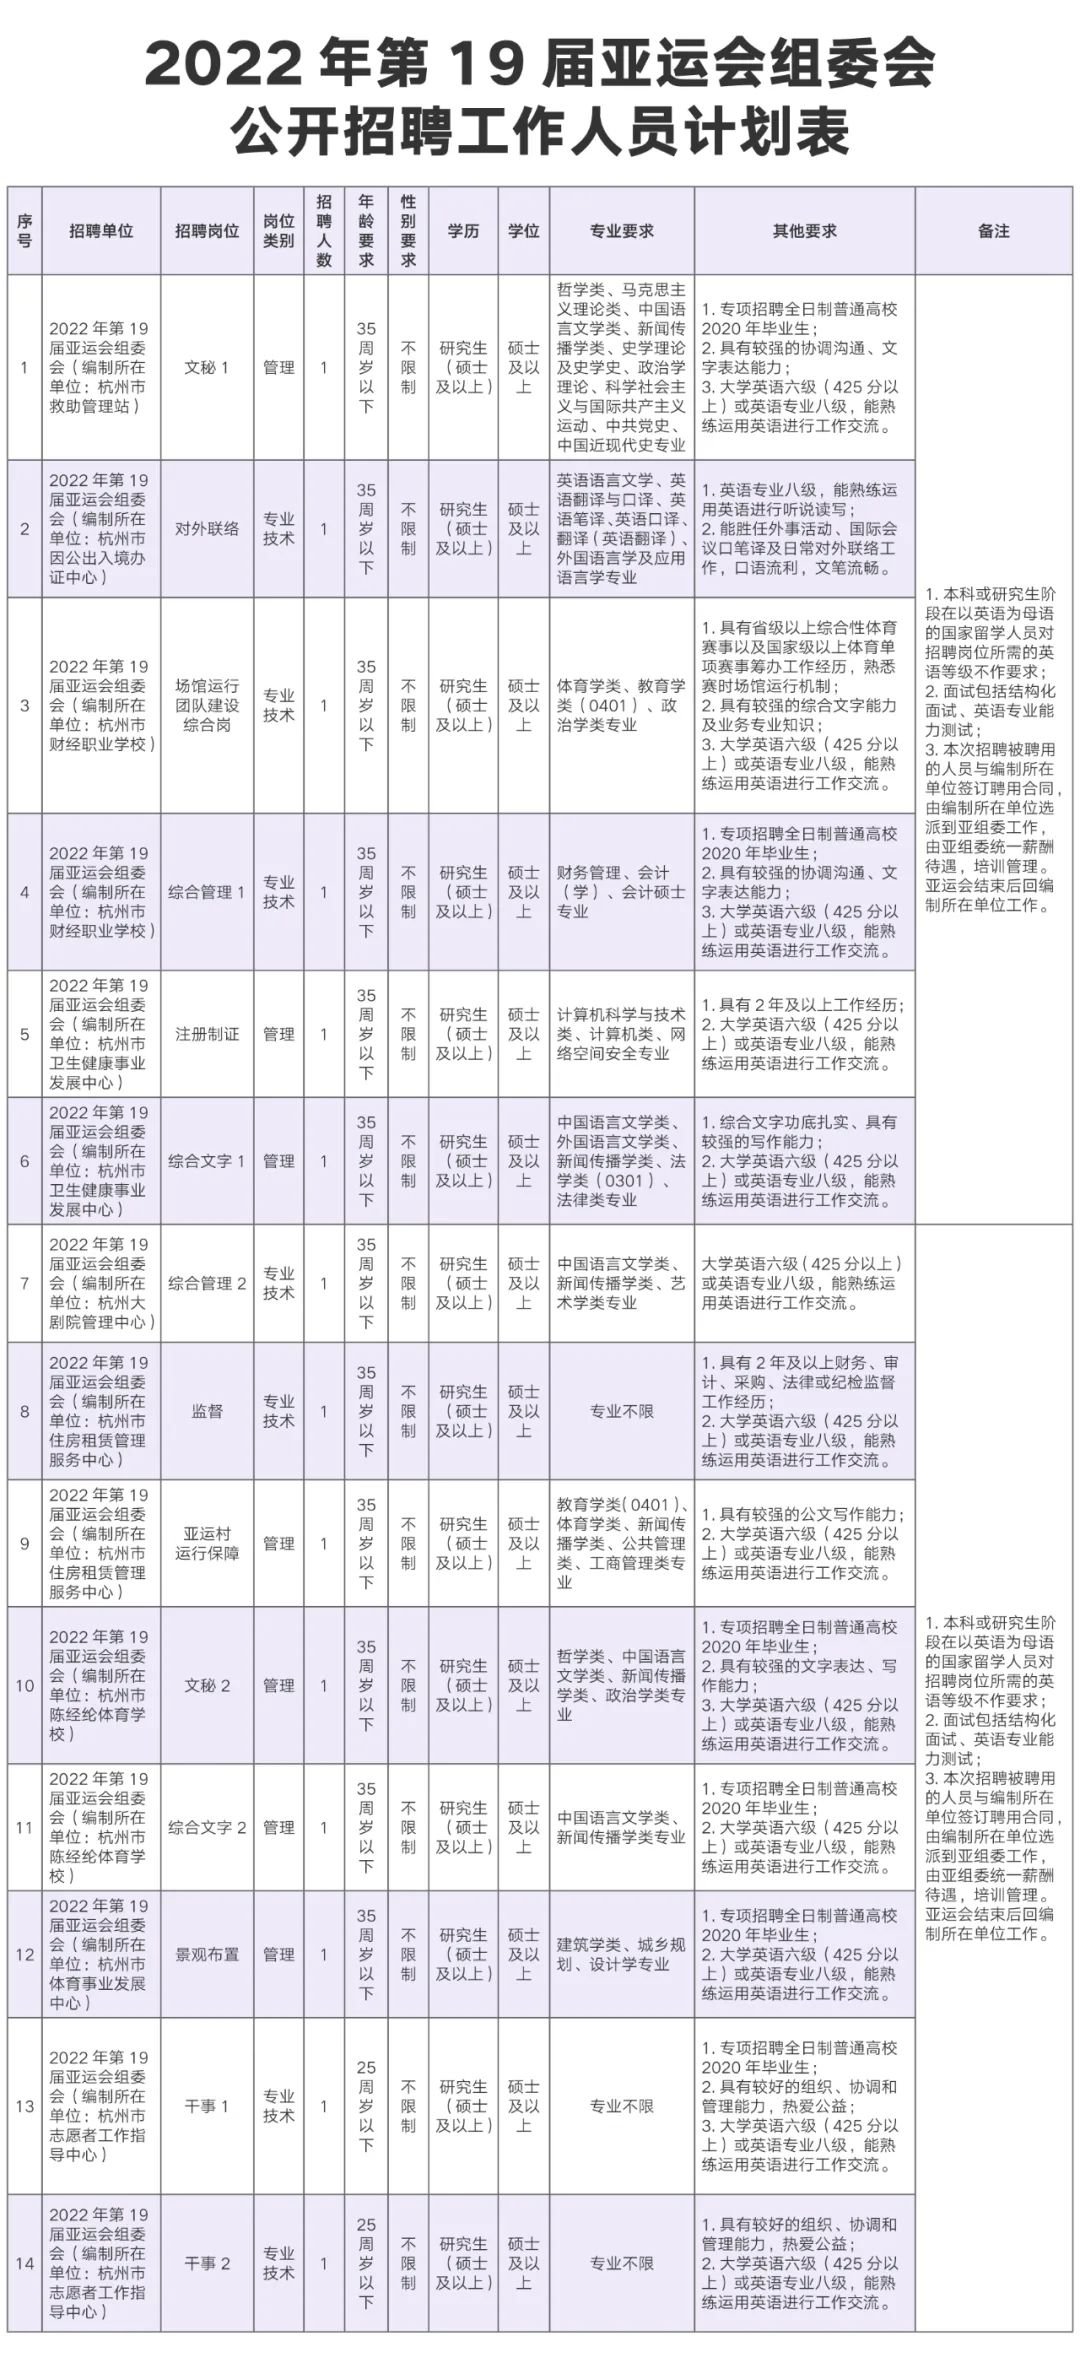 杭州亚运会第一阶段（按项目）报名工作结束已超过上届亚运会参赛数量